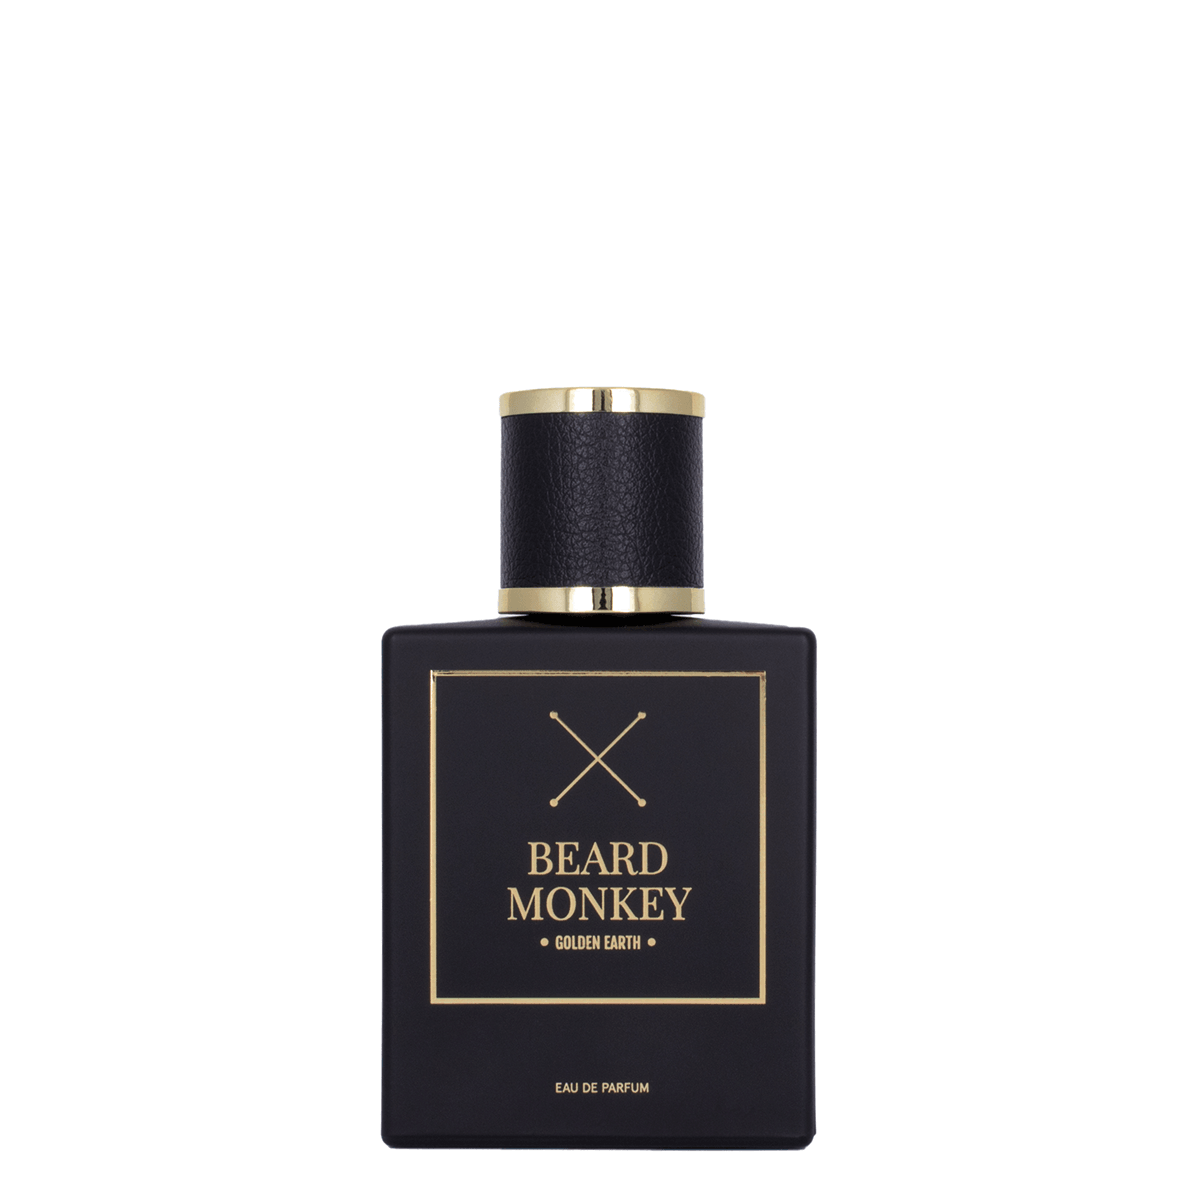 Beard Monkey Golden Earth Perfume | Parfyme | Beard Monkey | JK SHOP | JK Barber og herre frisør | Lavepriser | Best